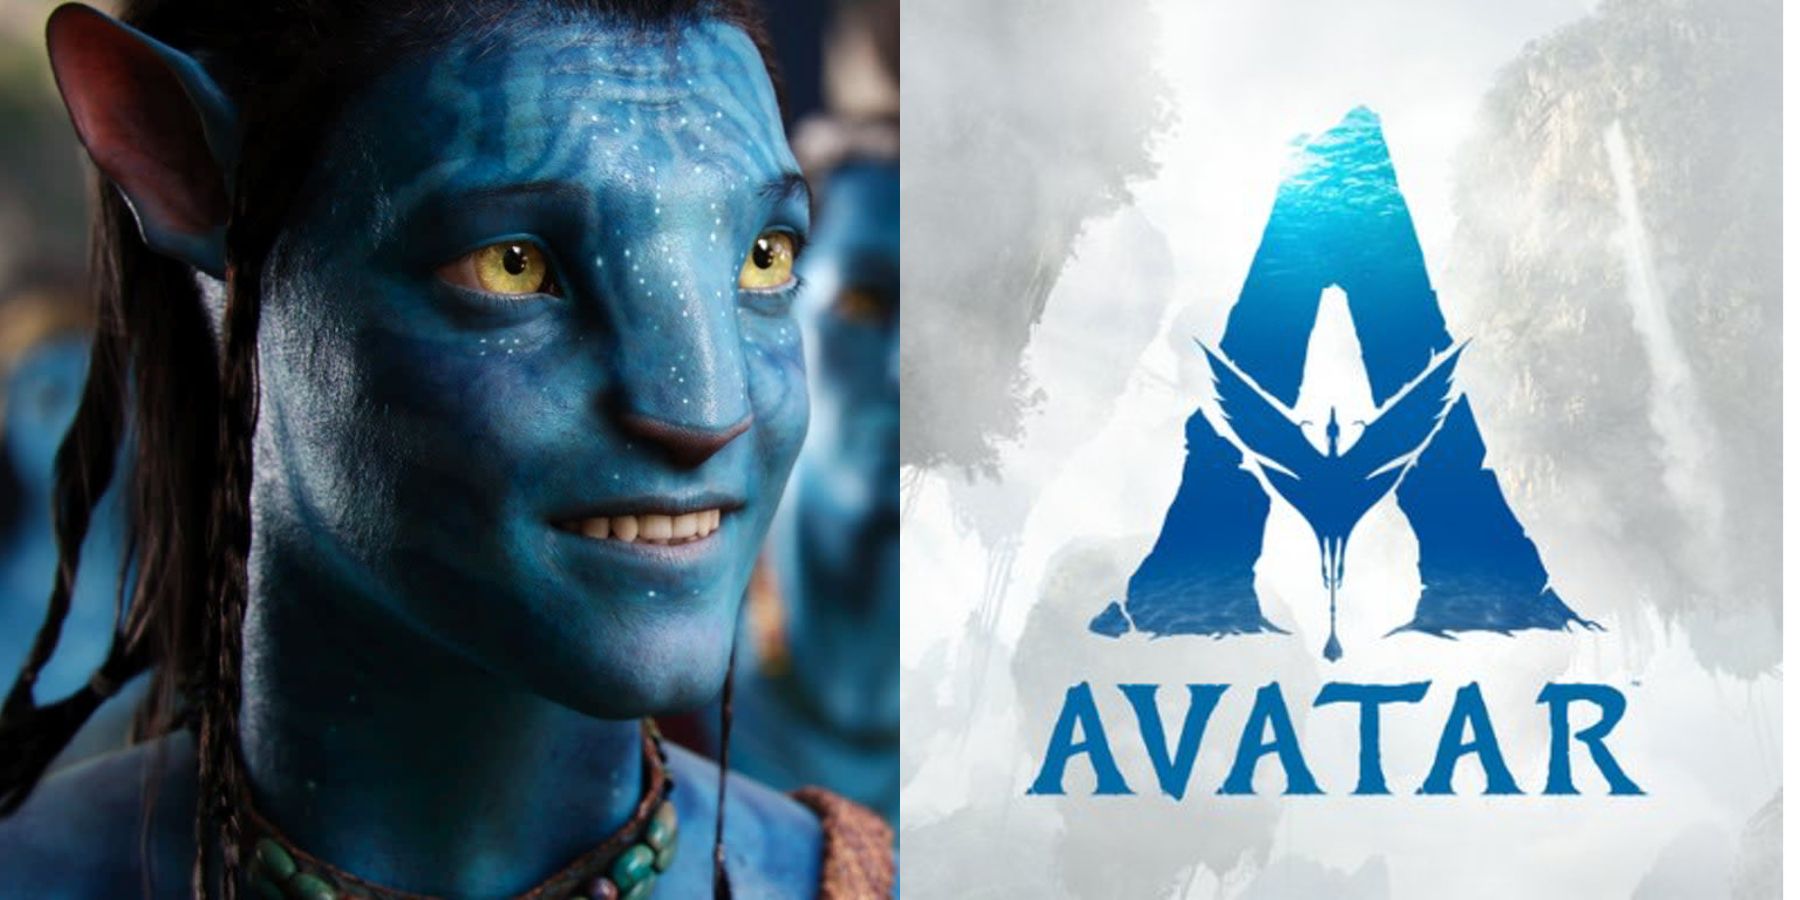 Heart USUK  Poster Avatar 1 và Avatar 2 hai phần phim  Facebook